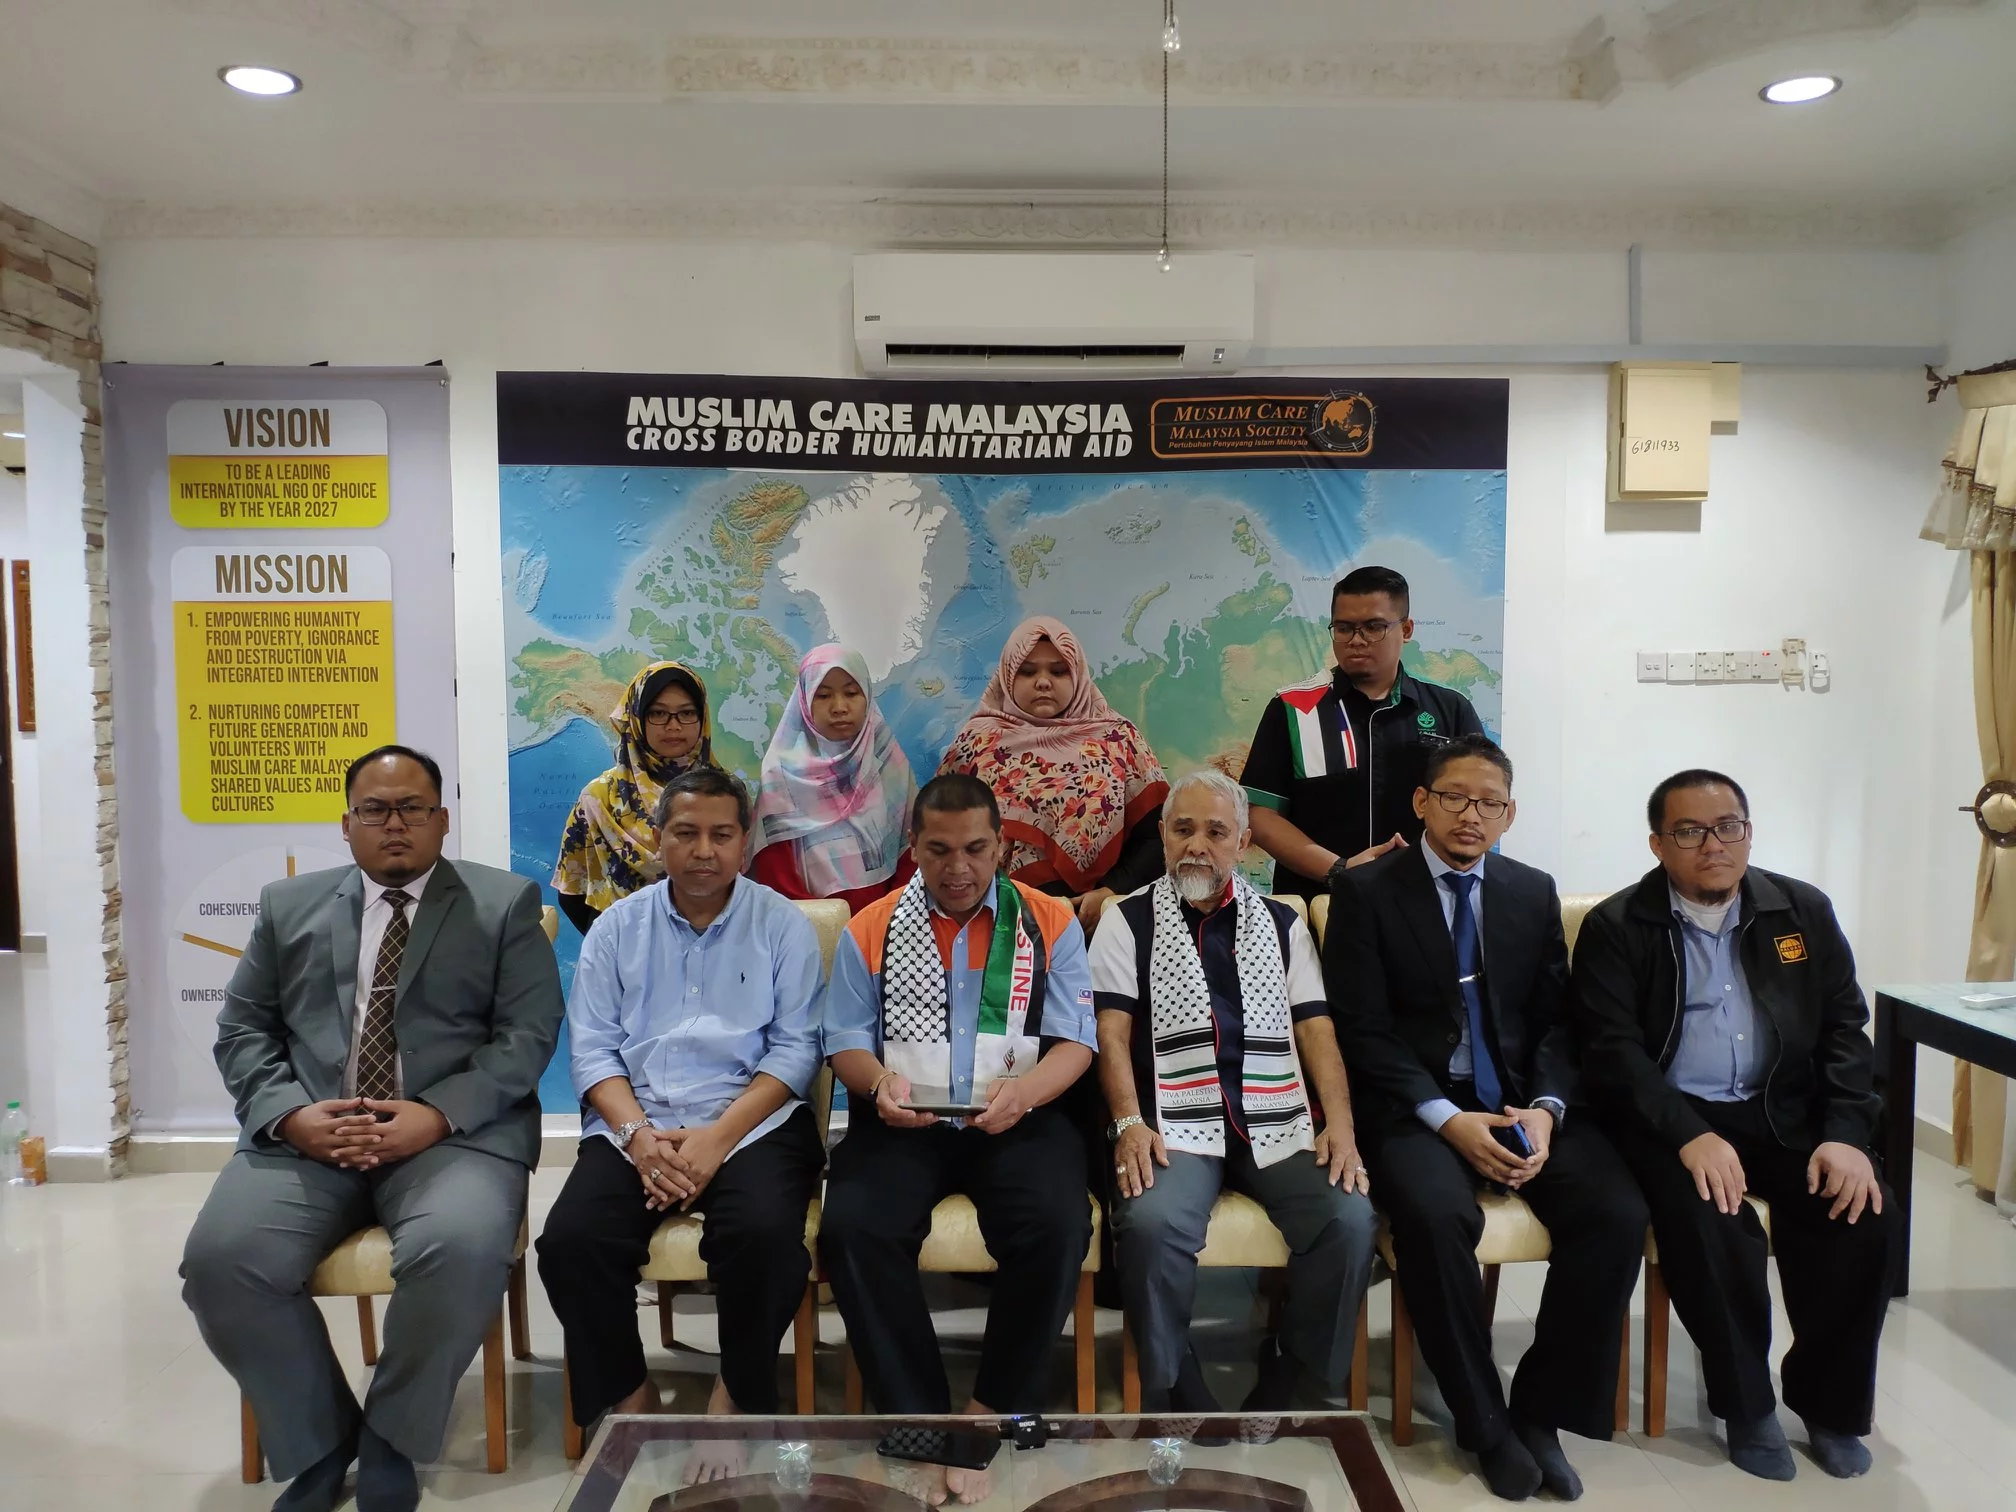 Kenyataan Bersama NGO Malaysia Menolak Tuduhan Duta Besar Palestin